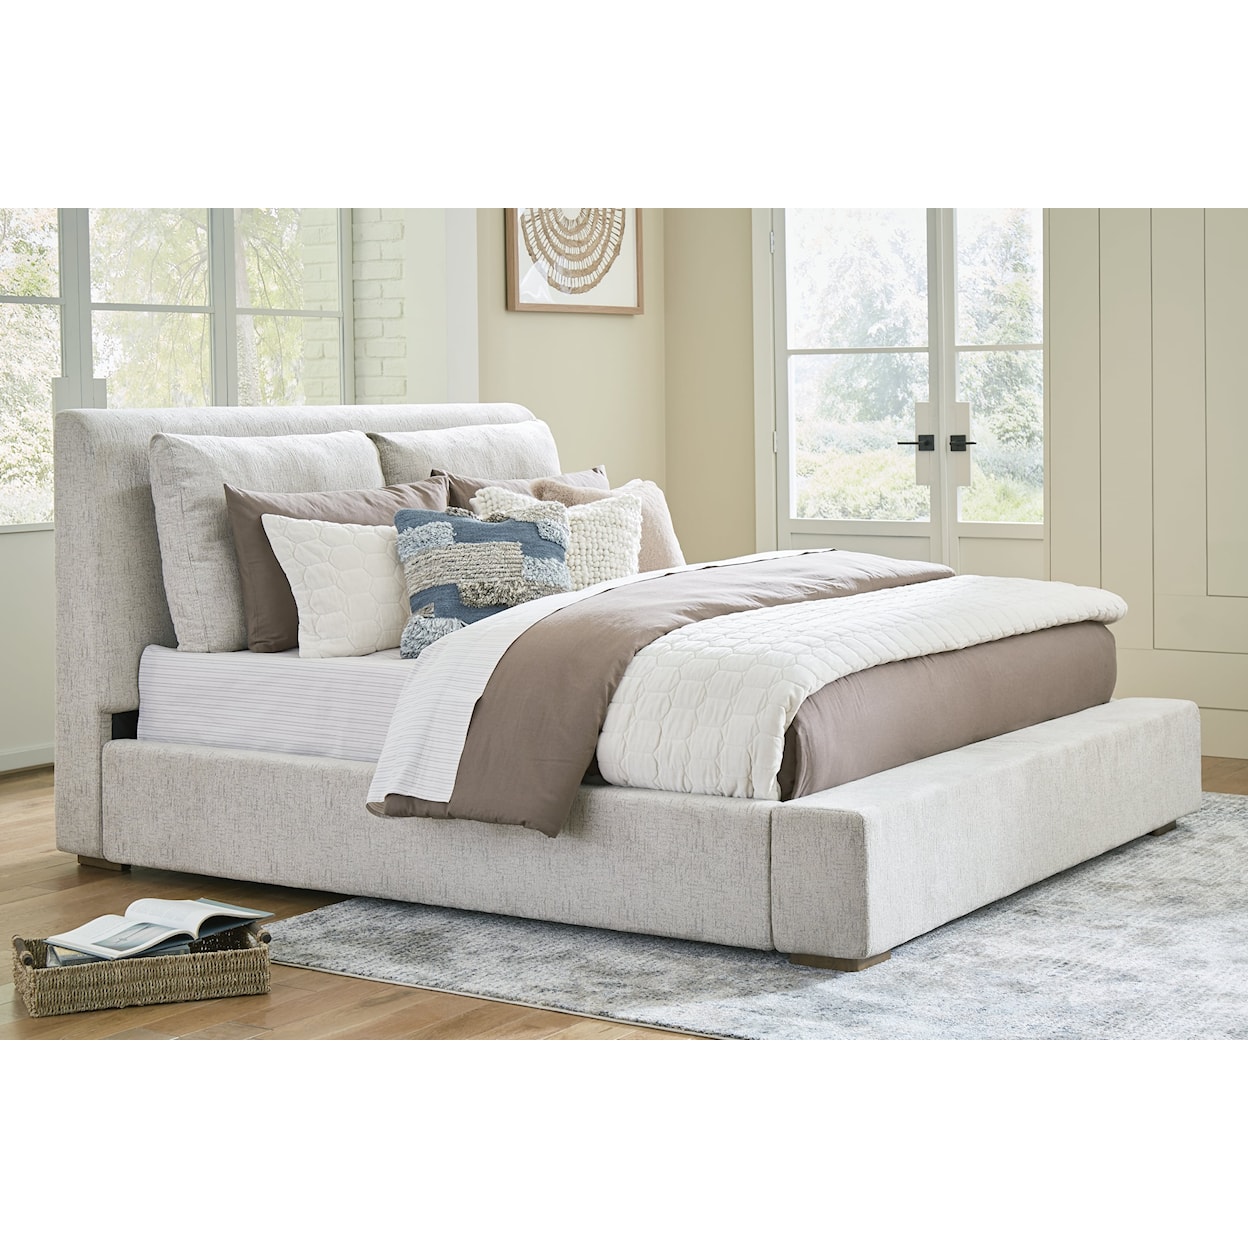 StyleLine Cabalynn California King Upholstered Bed